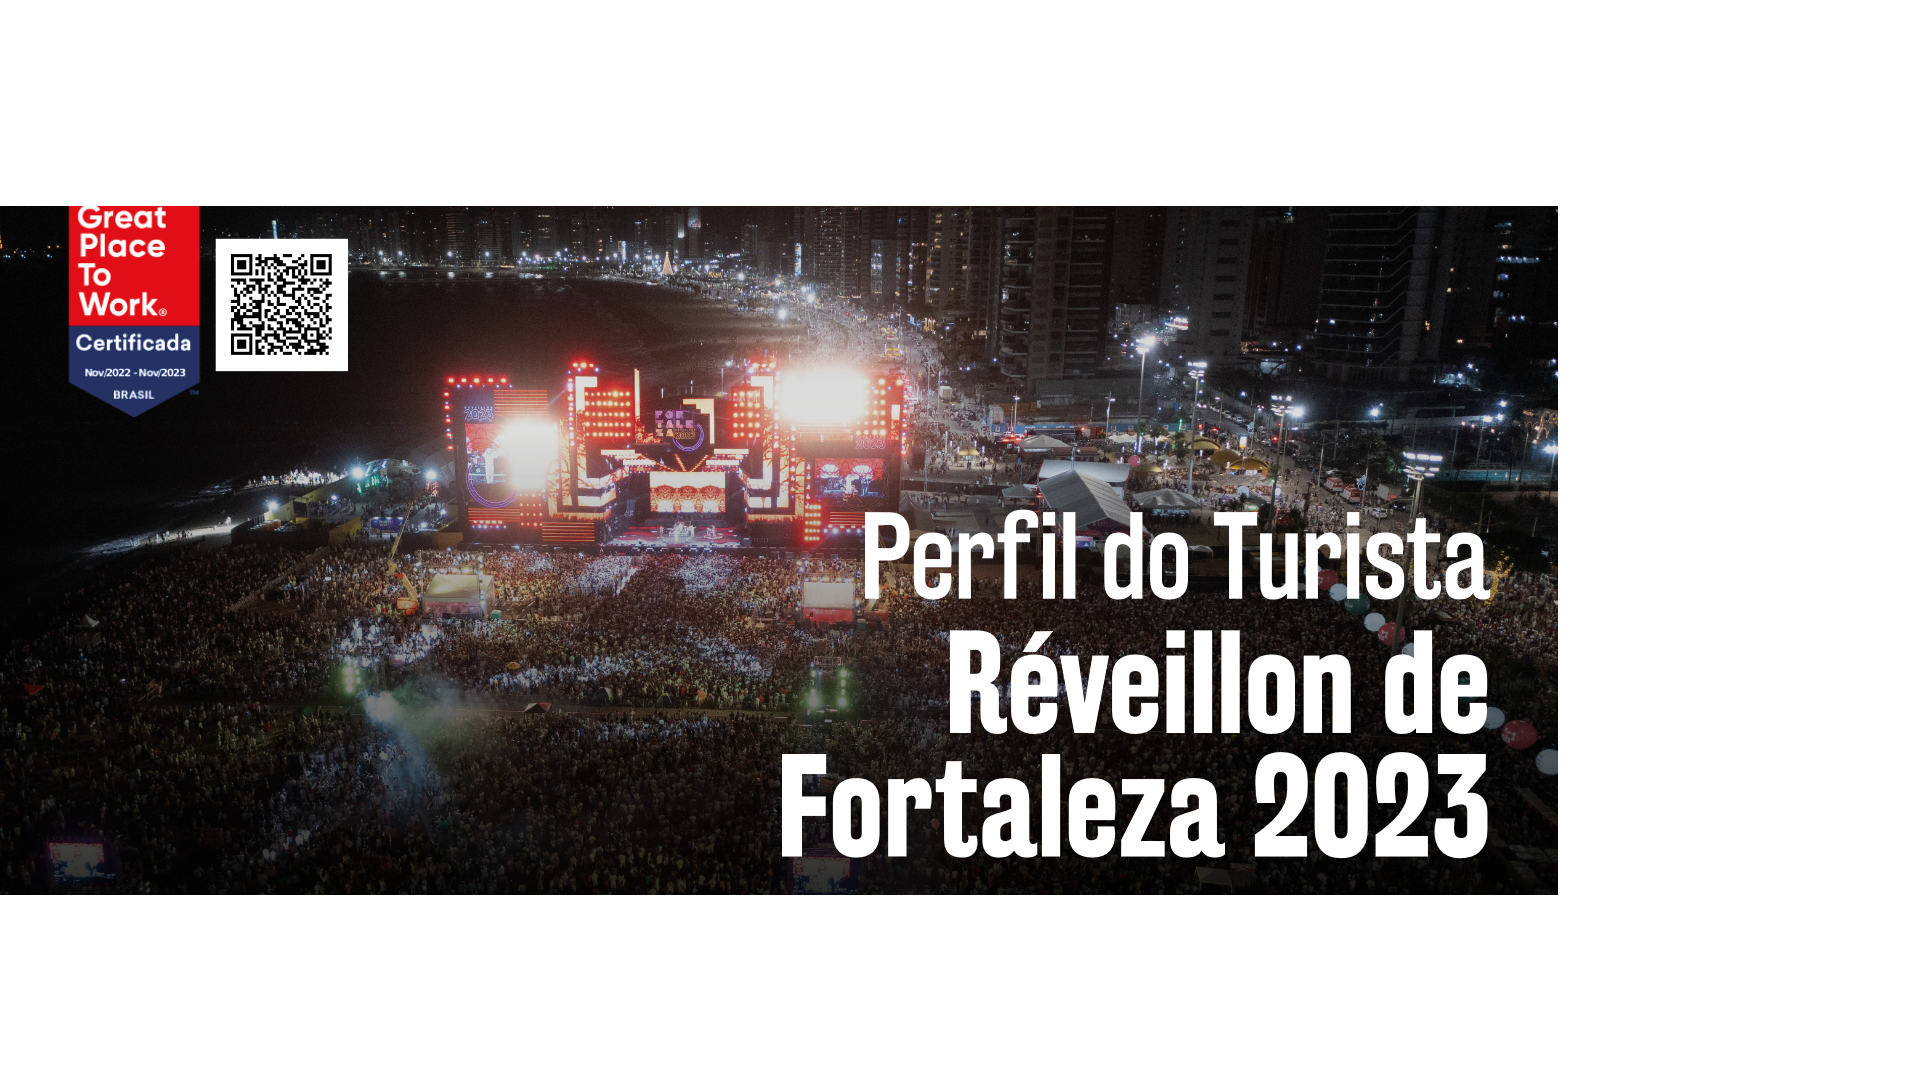 Perfil do Turista Réveillon de Fortaleza 2023